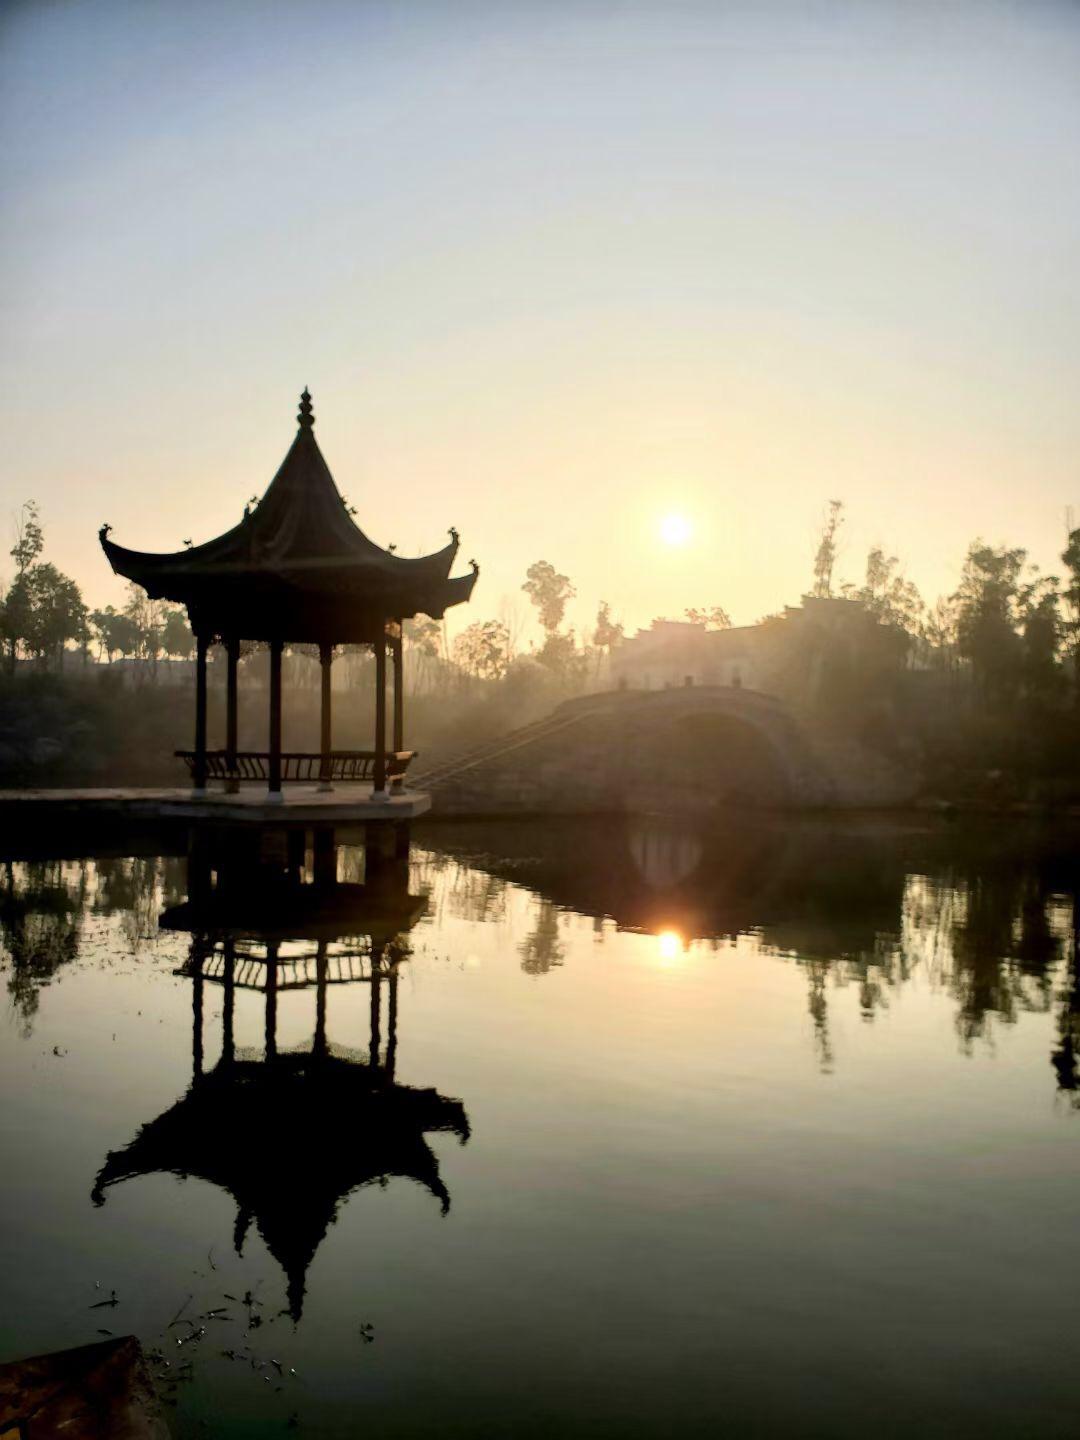 中国首家园林美术馆“从园林开始”展览前言及作品高清全图